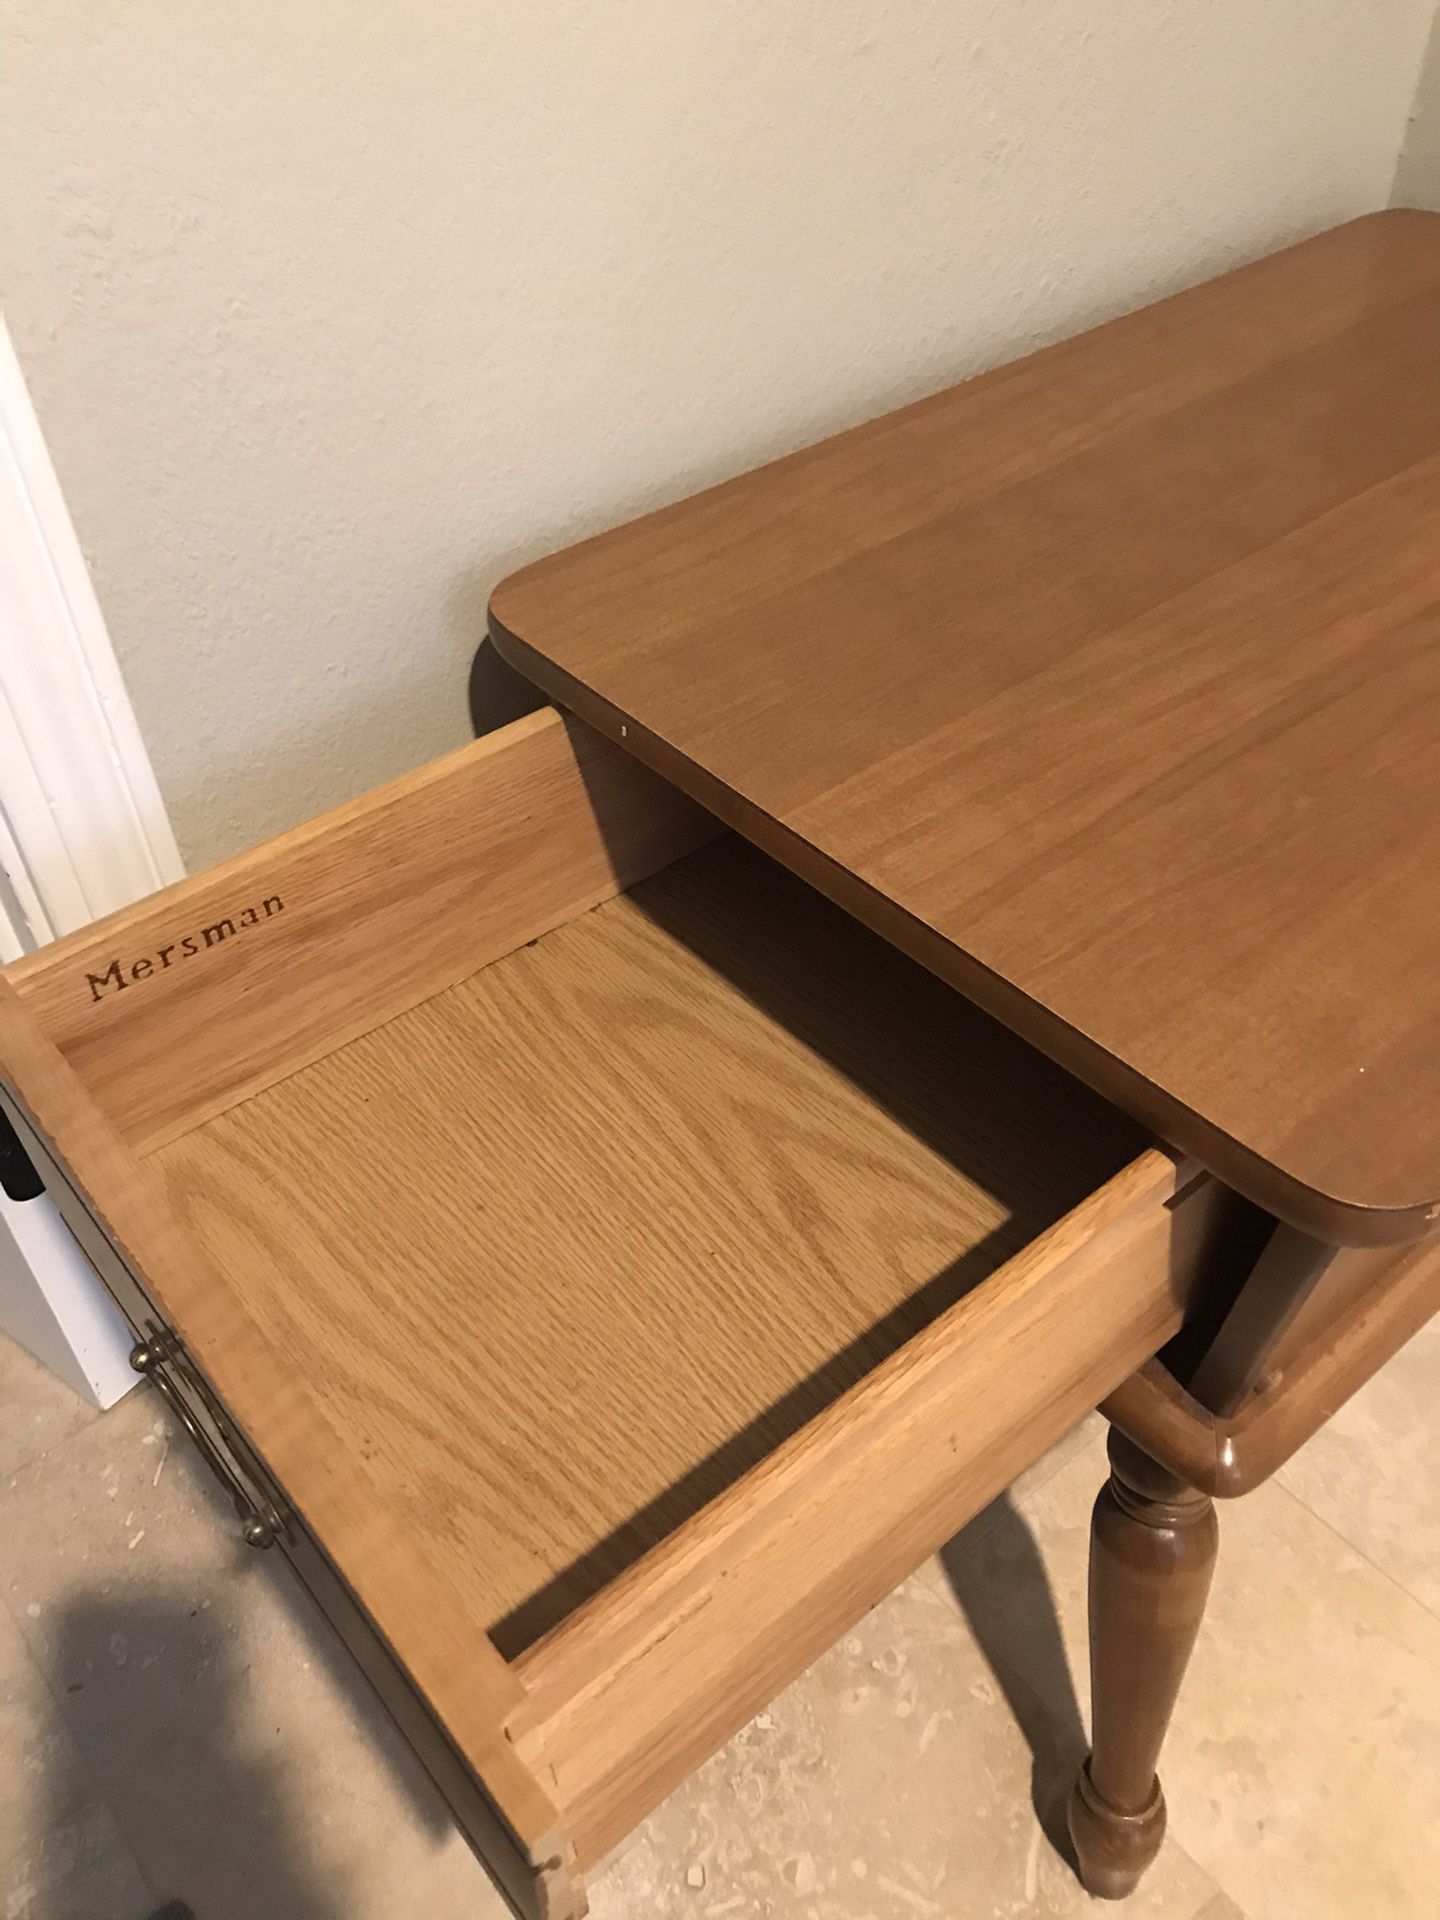 Mersman Antique End Table